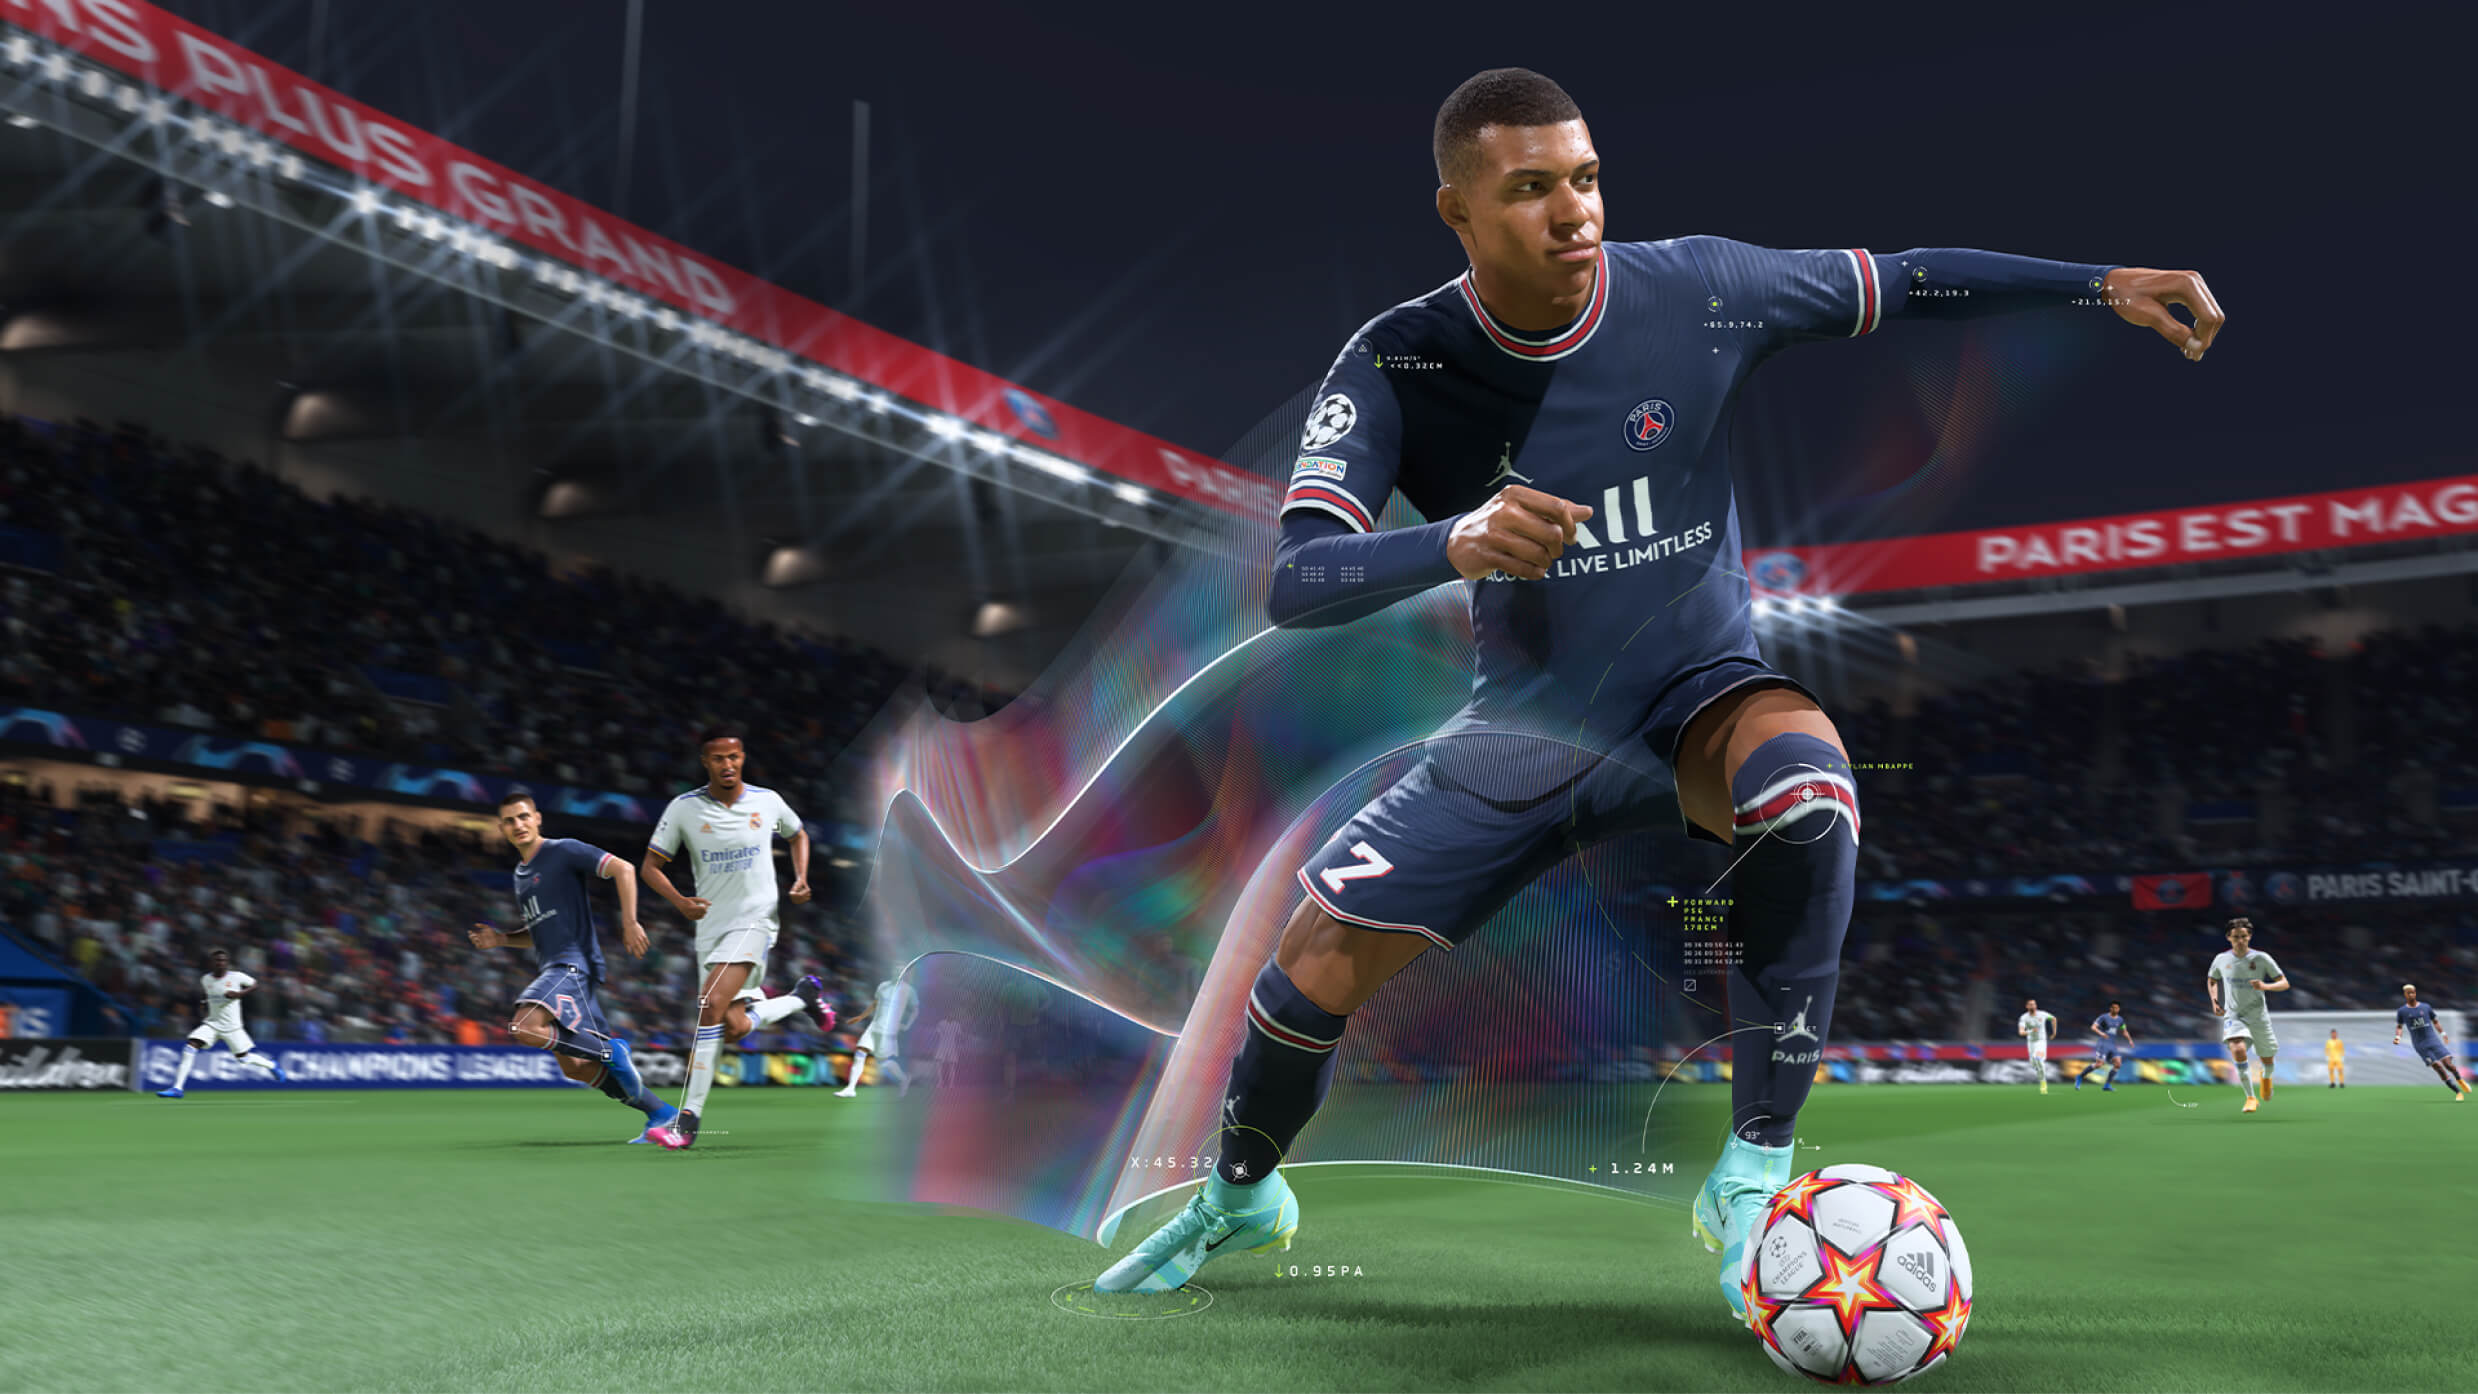 Rykte: 2K får FIFA-lisens for nytt spill i år